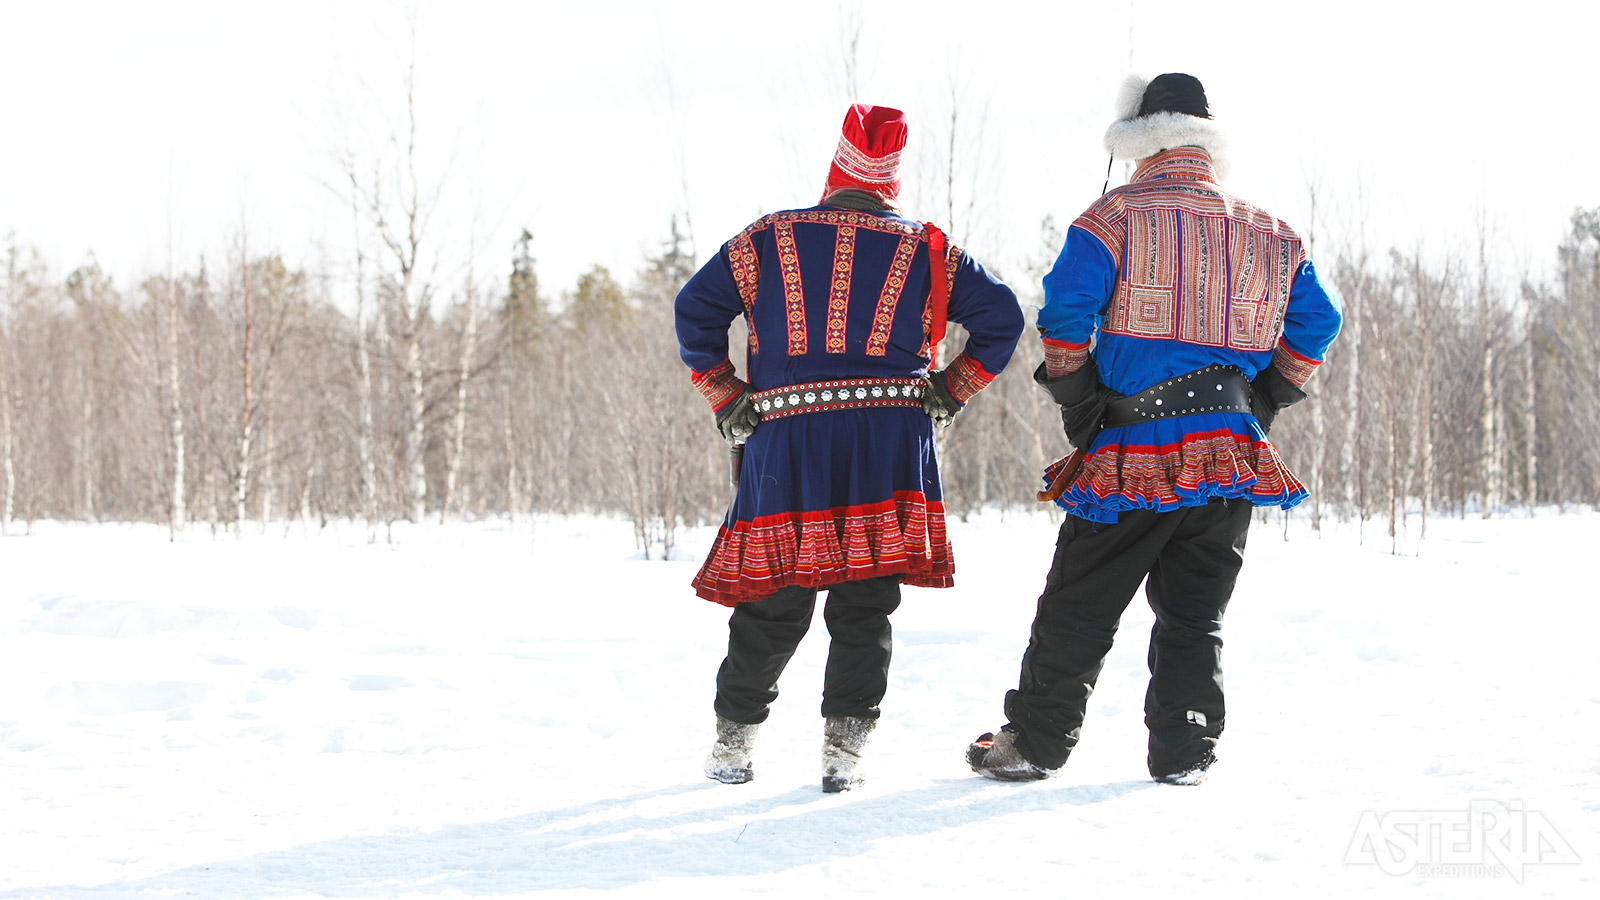 Tijdens dit programma kom je alles te weten over de kleurrijke klederdracht van de Sámi